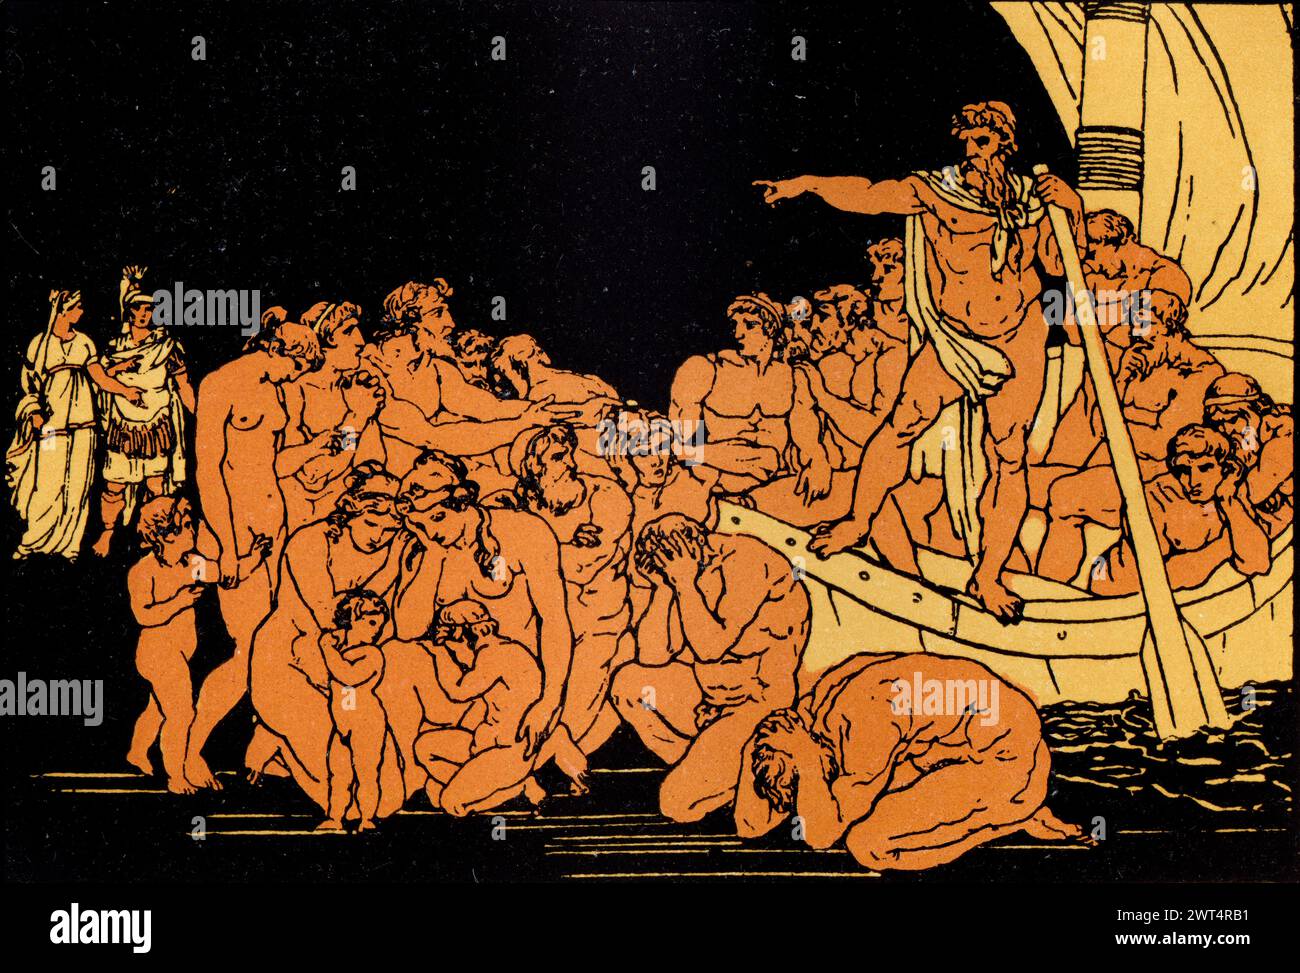 Vintage Illustration römische Mythologie, Charon und die Geister, Aeneid ein lateinisches Epos, das die legendäre Geschichte von Aeneas erzählt, einem Trojaner, der aus dem geflohen ist Stockfoto